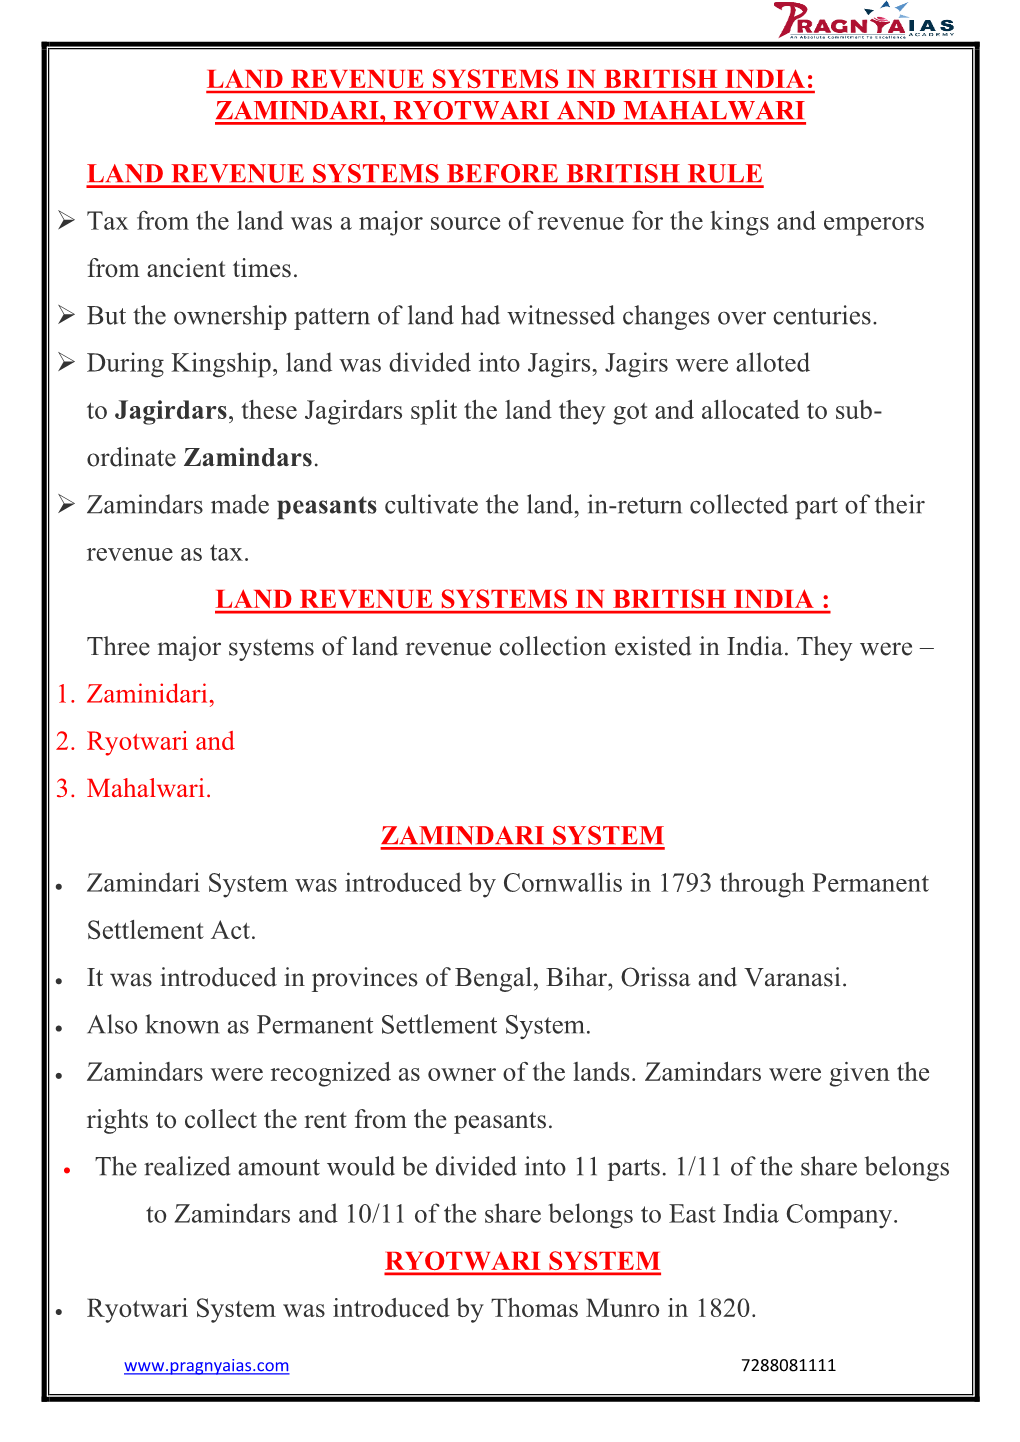 Zamindari, Ryotwari and Mahalwari Land Revenue Systems Before British Rule